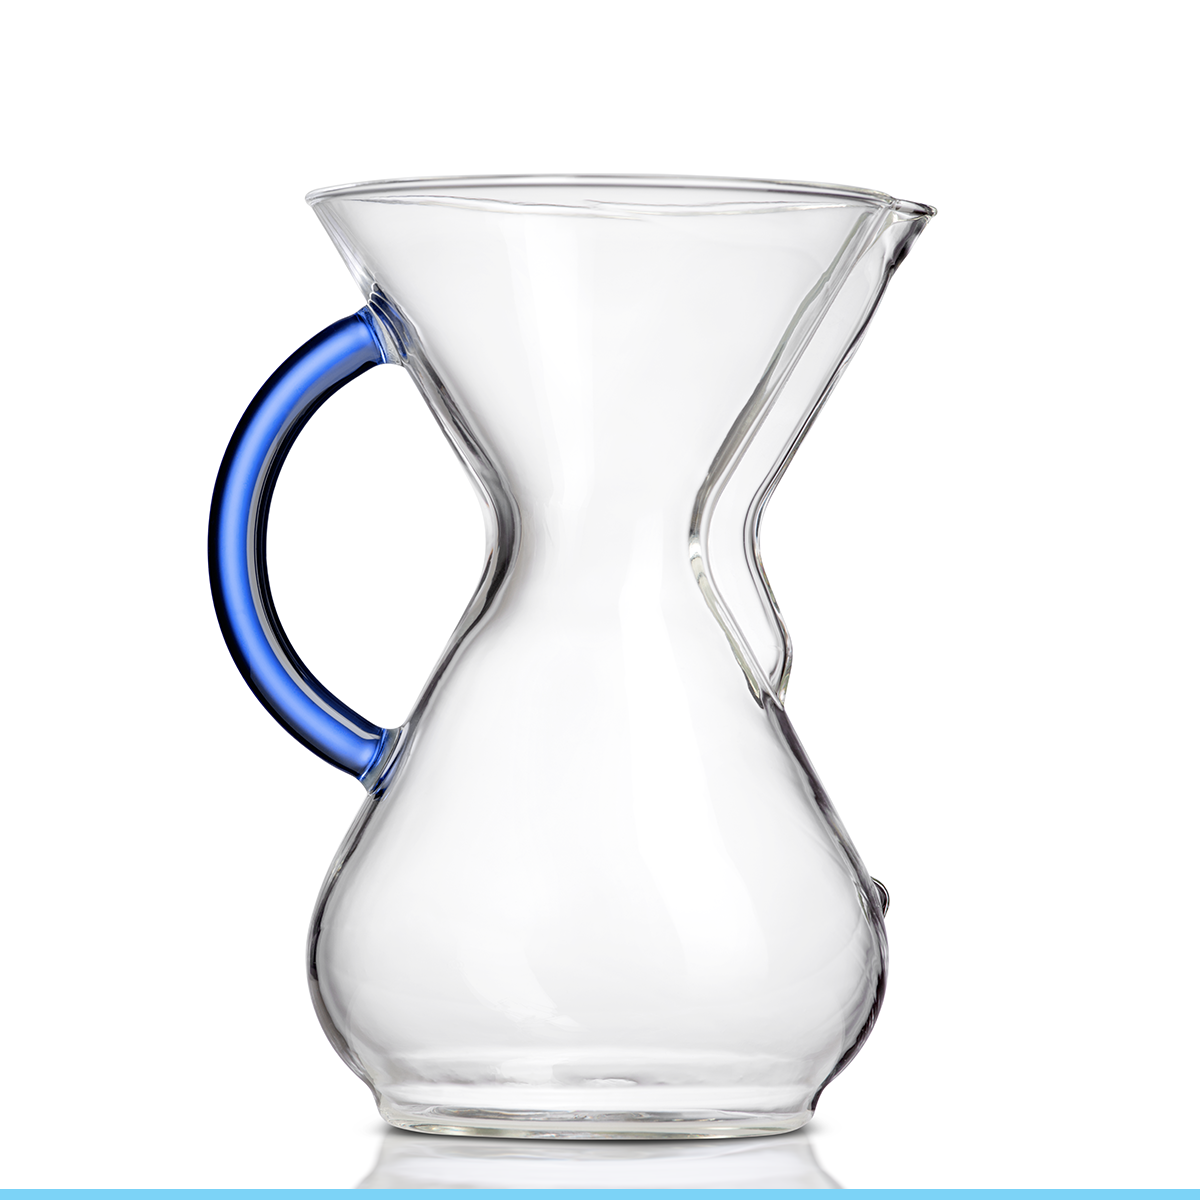 Chemex Glass Mug with Handle